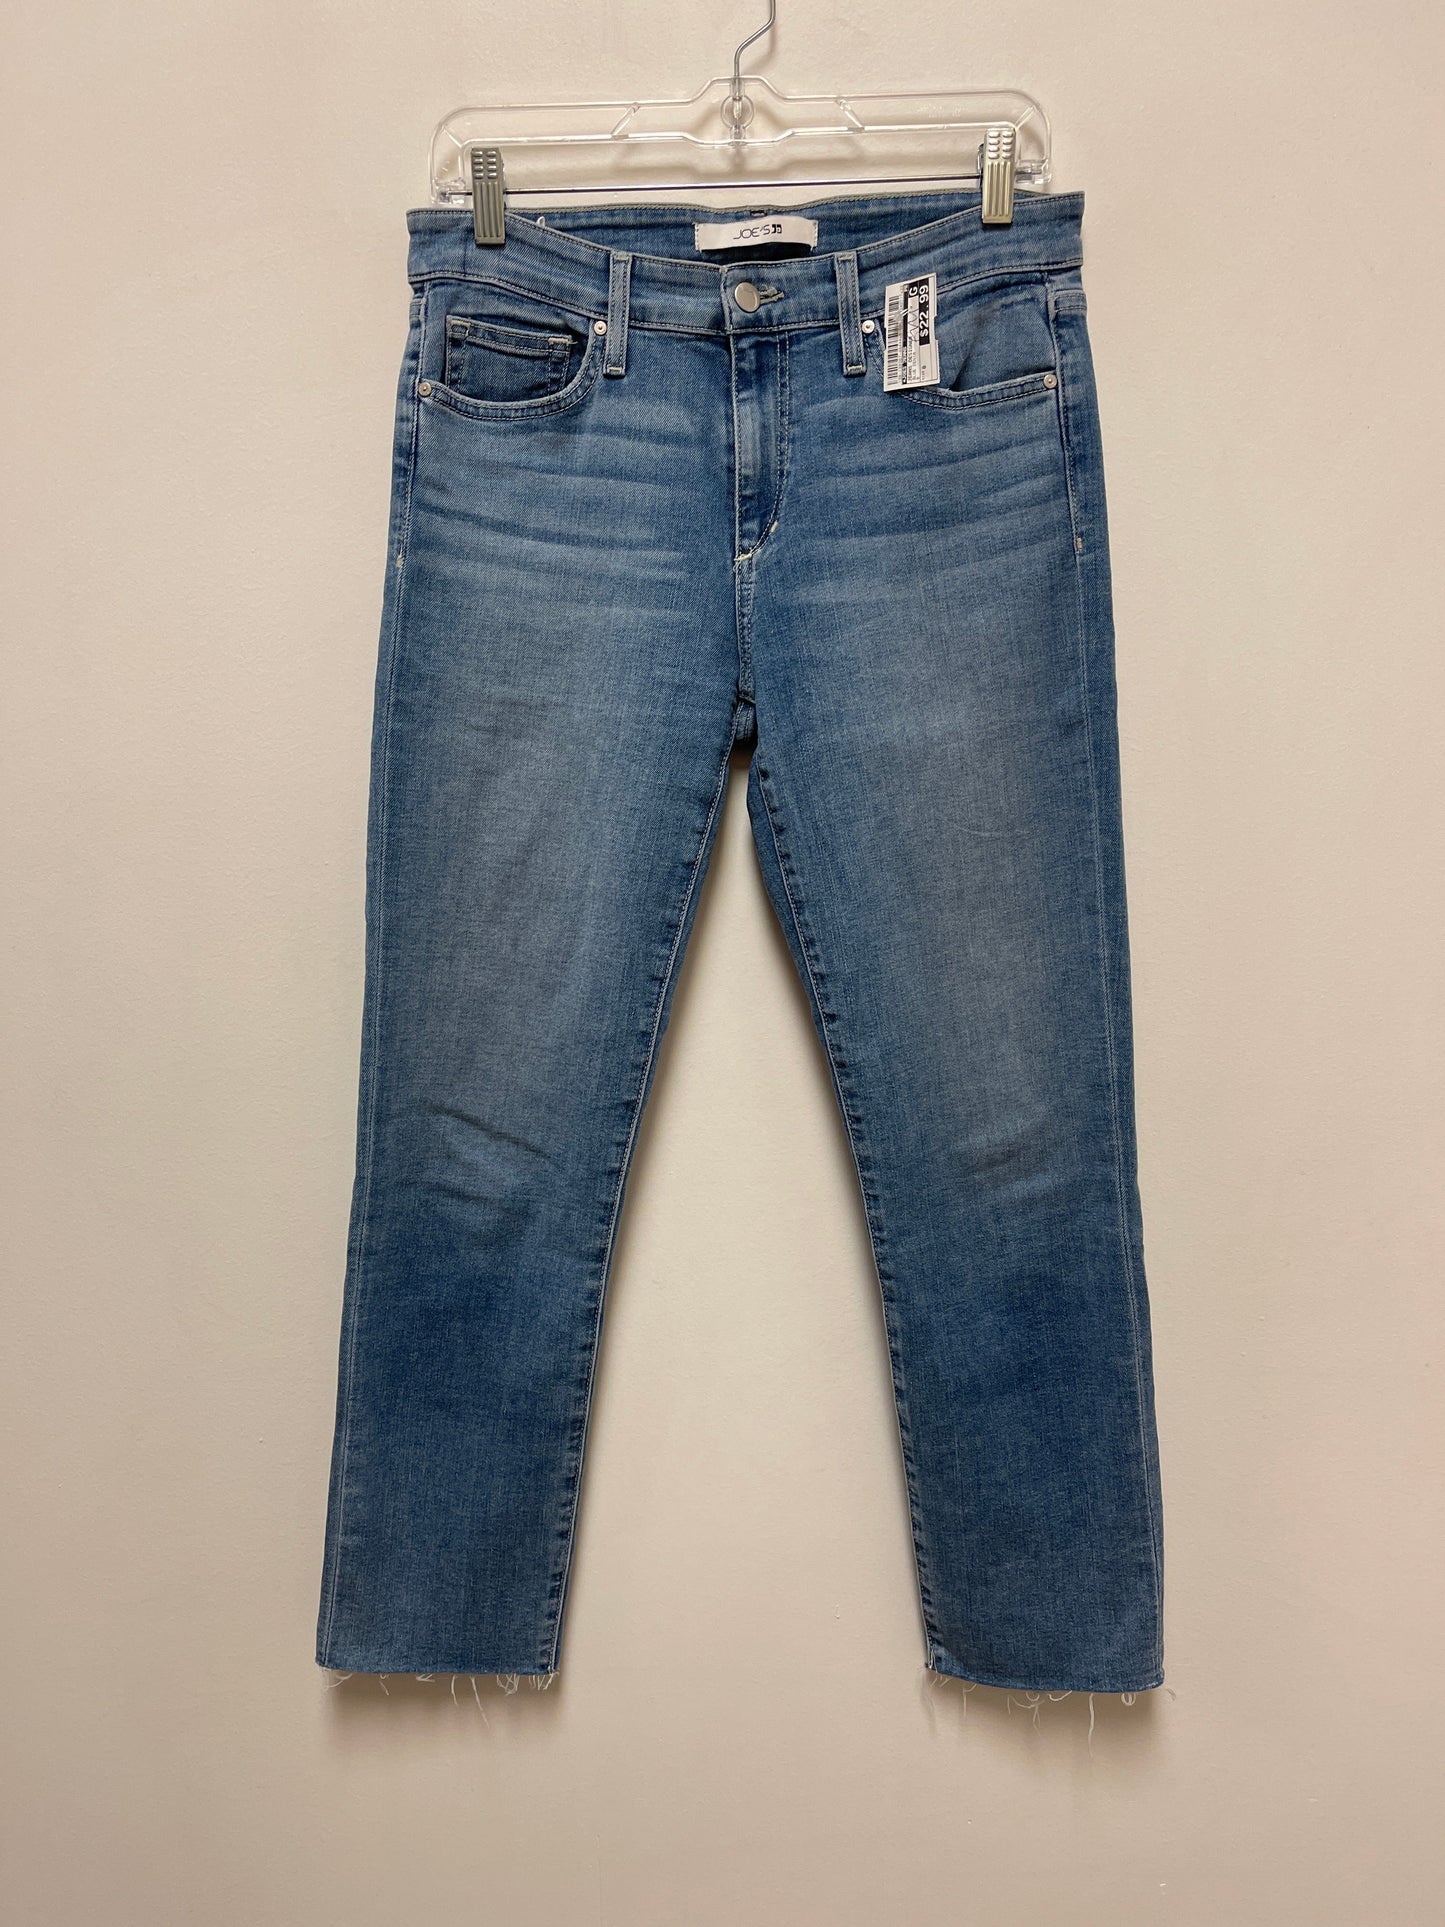 Blue Denim Jeans Designer Joes Jeans, Size 8